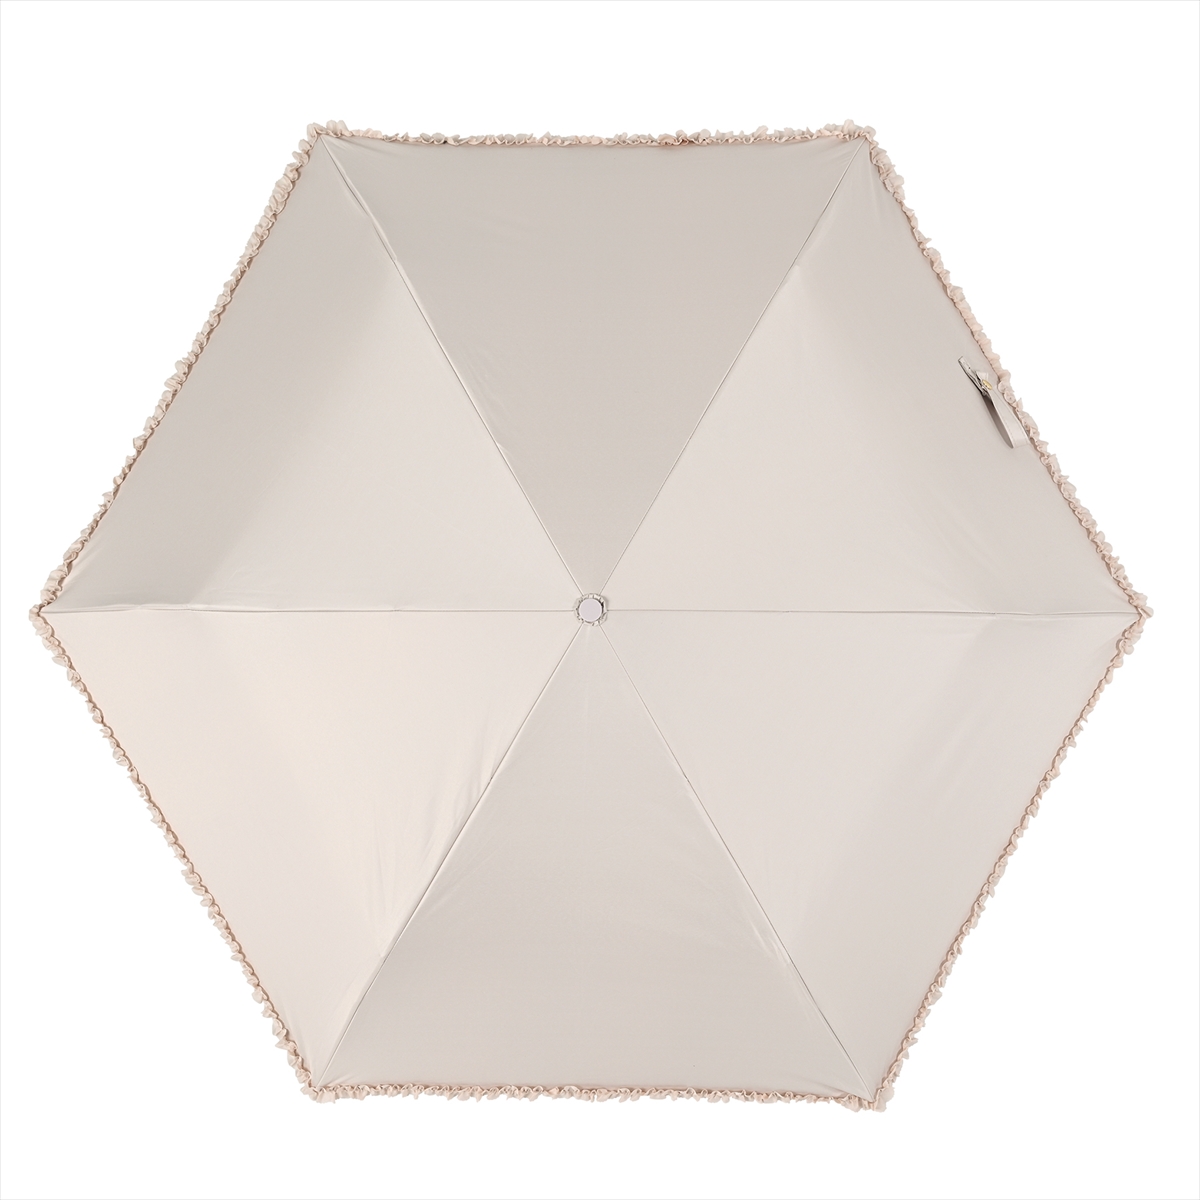 公式 日傘 レディース 晴雨兼用 折りたたみ傘 遮光 遮熱 フリル スレンダー コンパクト